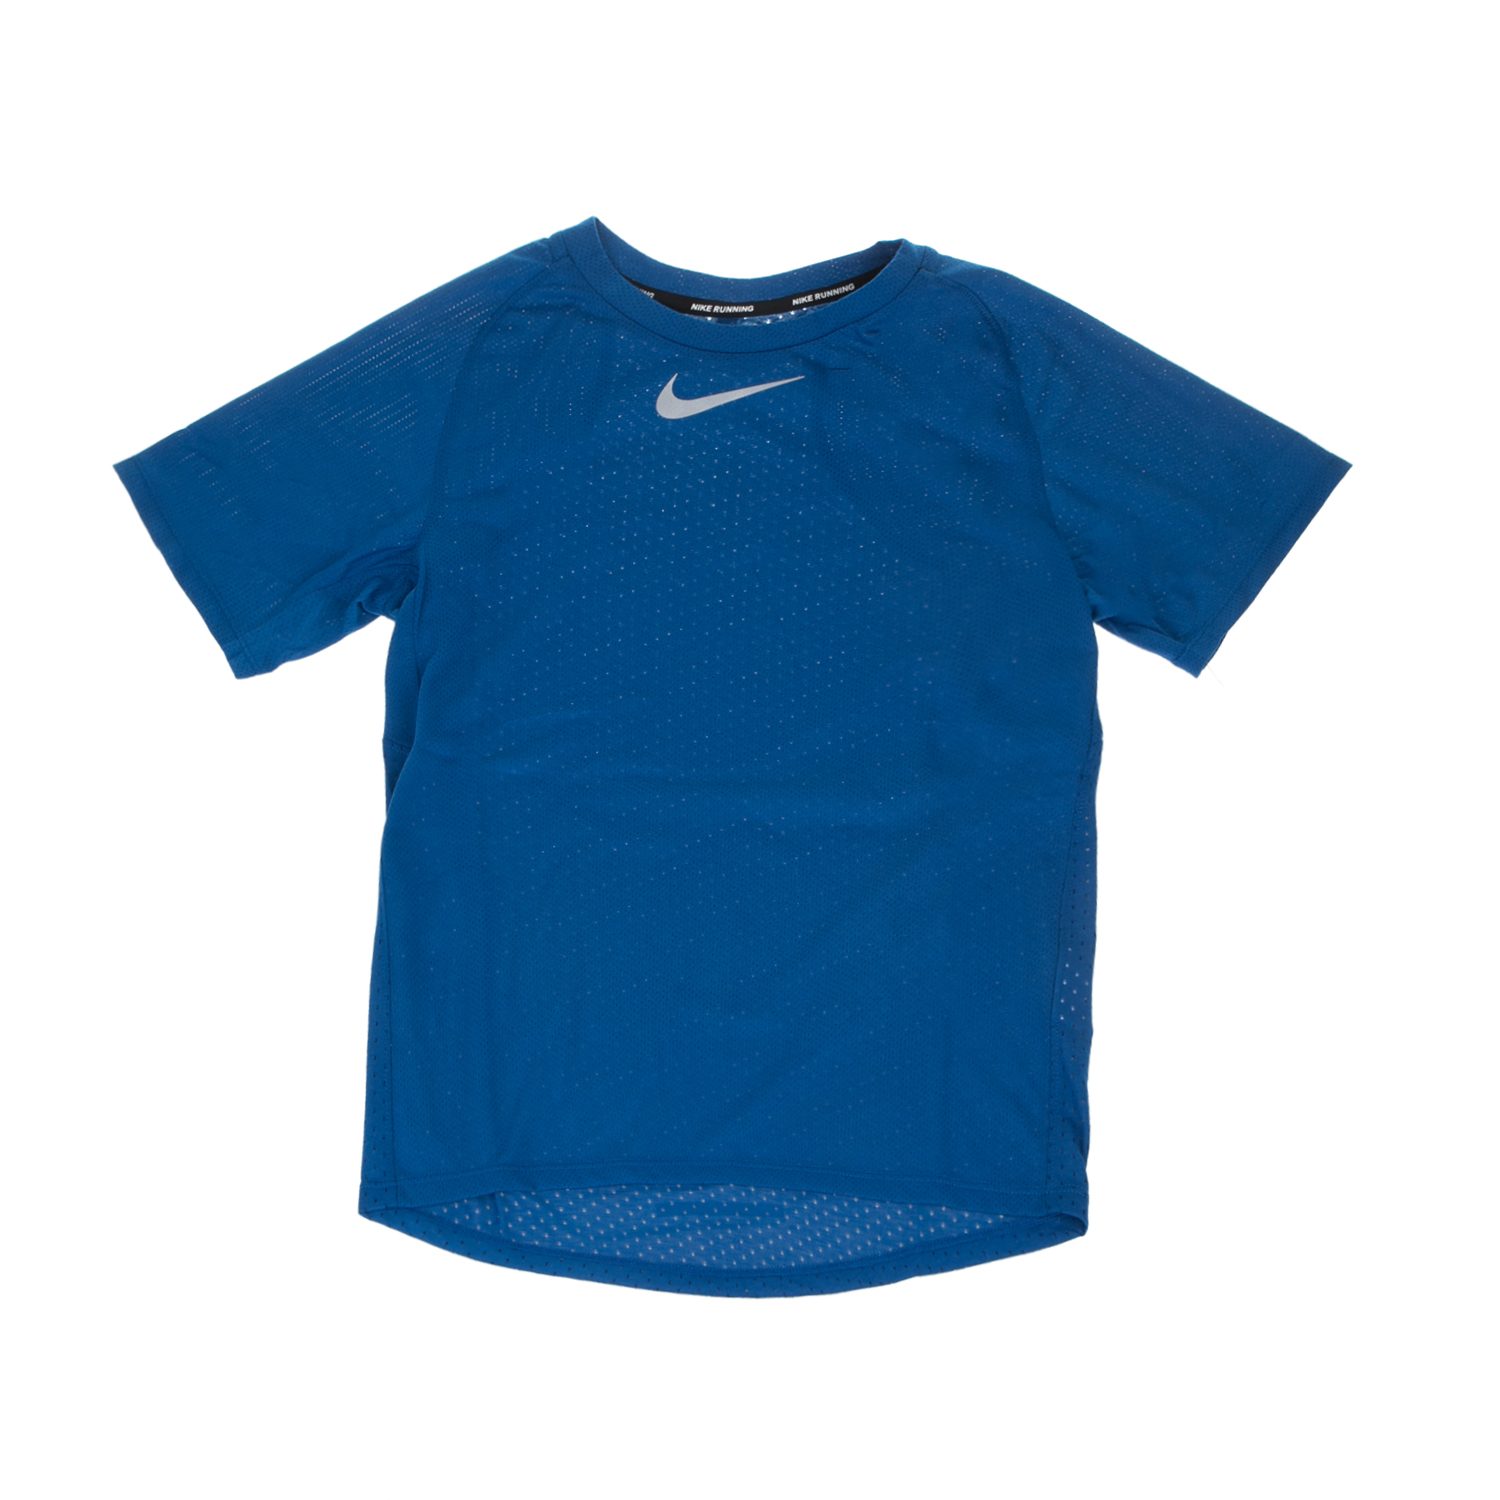 Παιδικά/Boys/Ρούχα/Αθλητικά NIKE - Αγορίστικη κοντομάνικη μπλούζα Nike BRTHE TOP SS SEASONAL μπλε